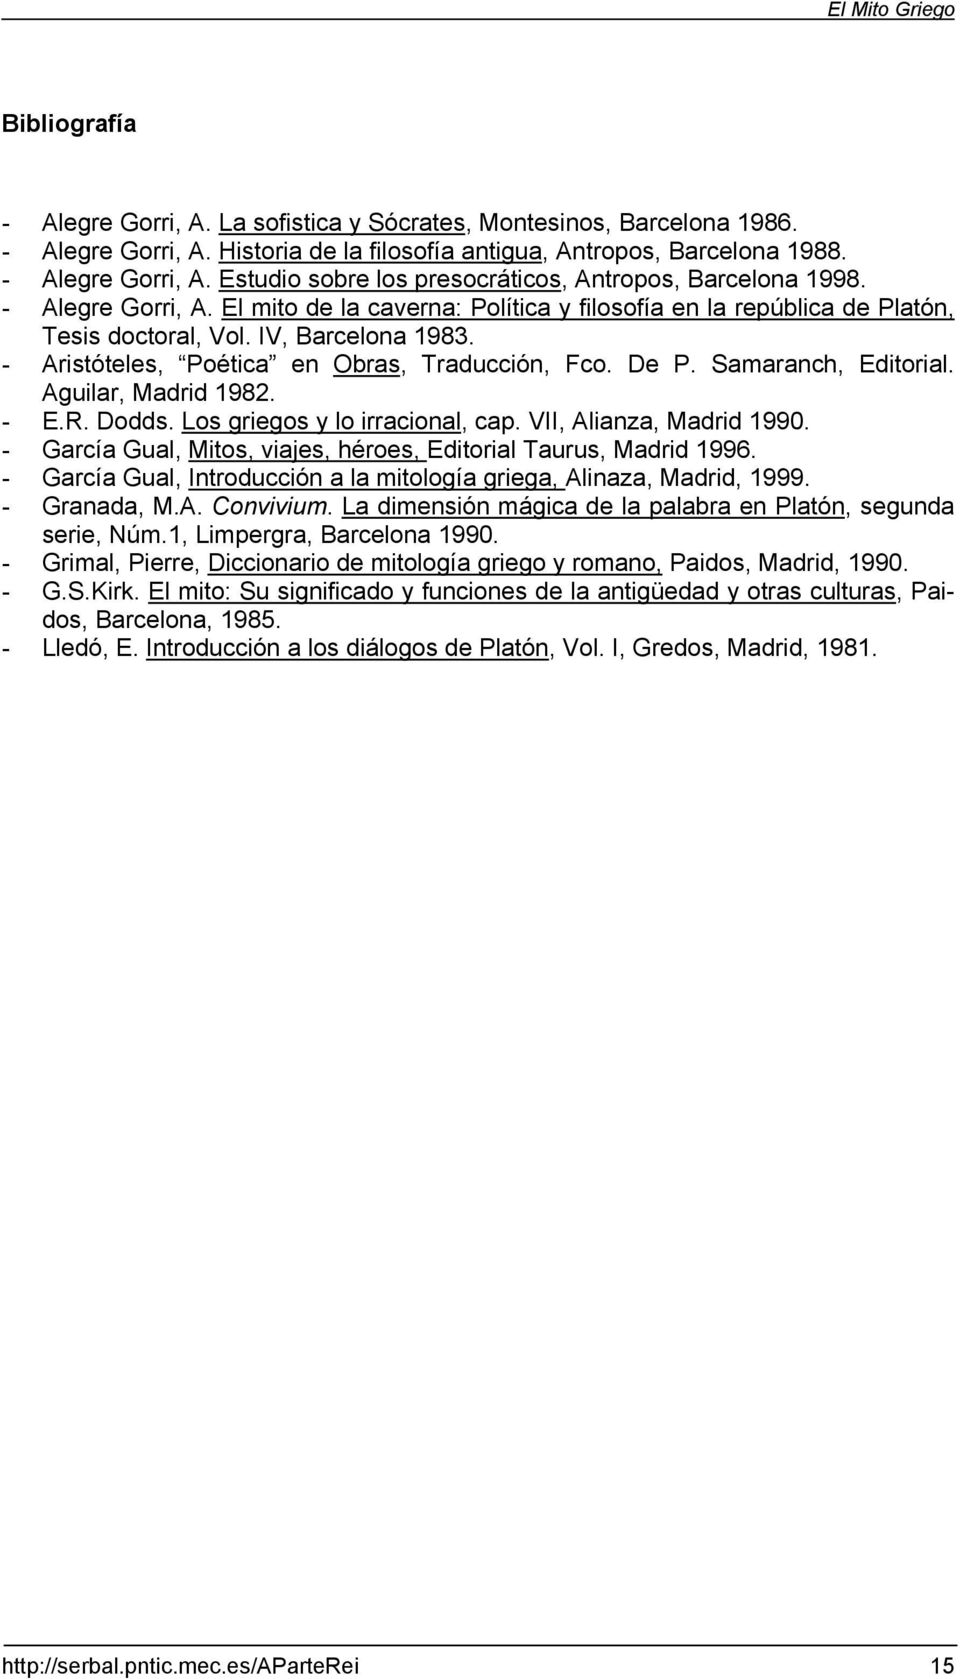 Samaranch, Editorial. Aguilar, Madrid 1982. - E.R. Dodds. Los griegos y lo irracional, cap. VII, Alianza, Madrid 1990. - García Gual, Mitos, viajes, héroes, Editorial Taurus, Madrid 1996.